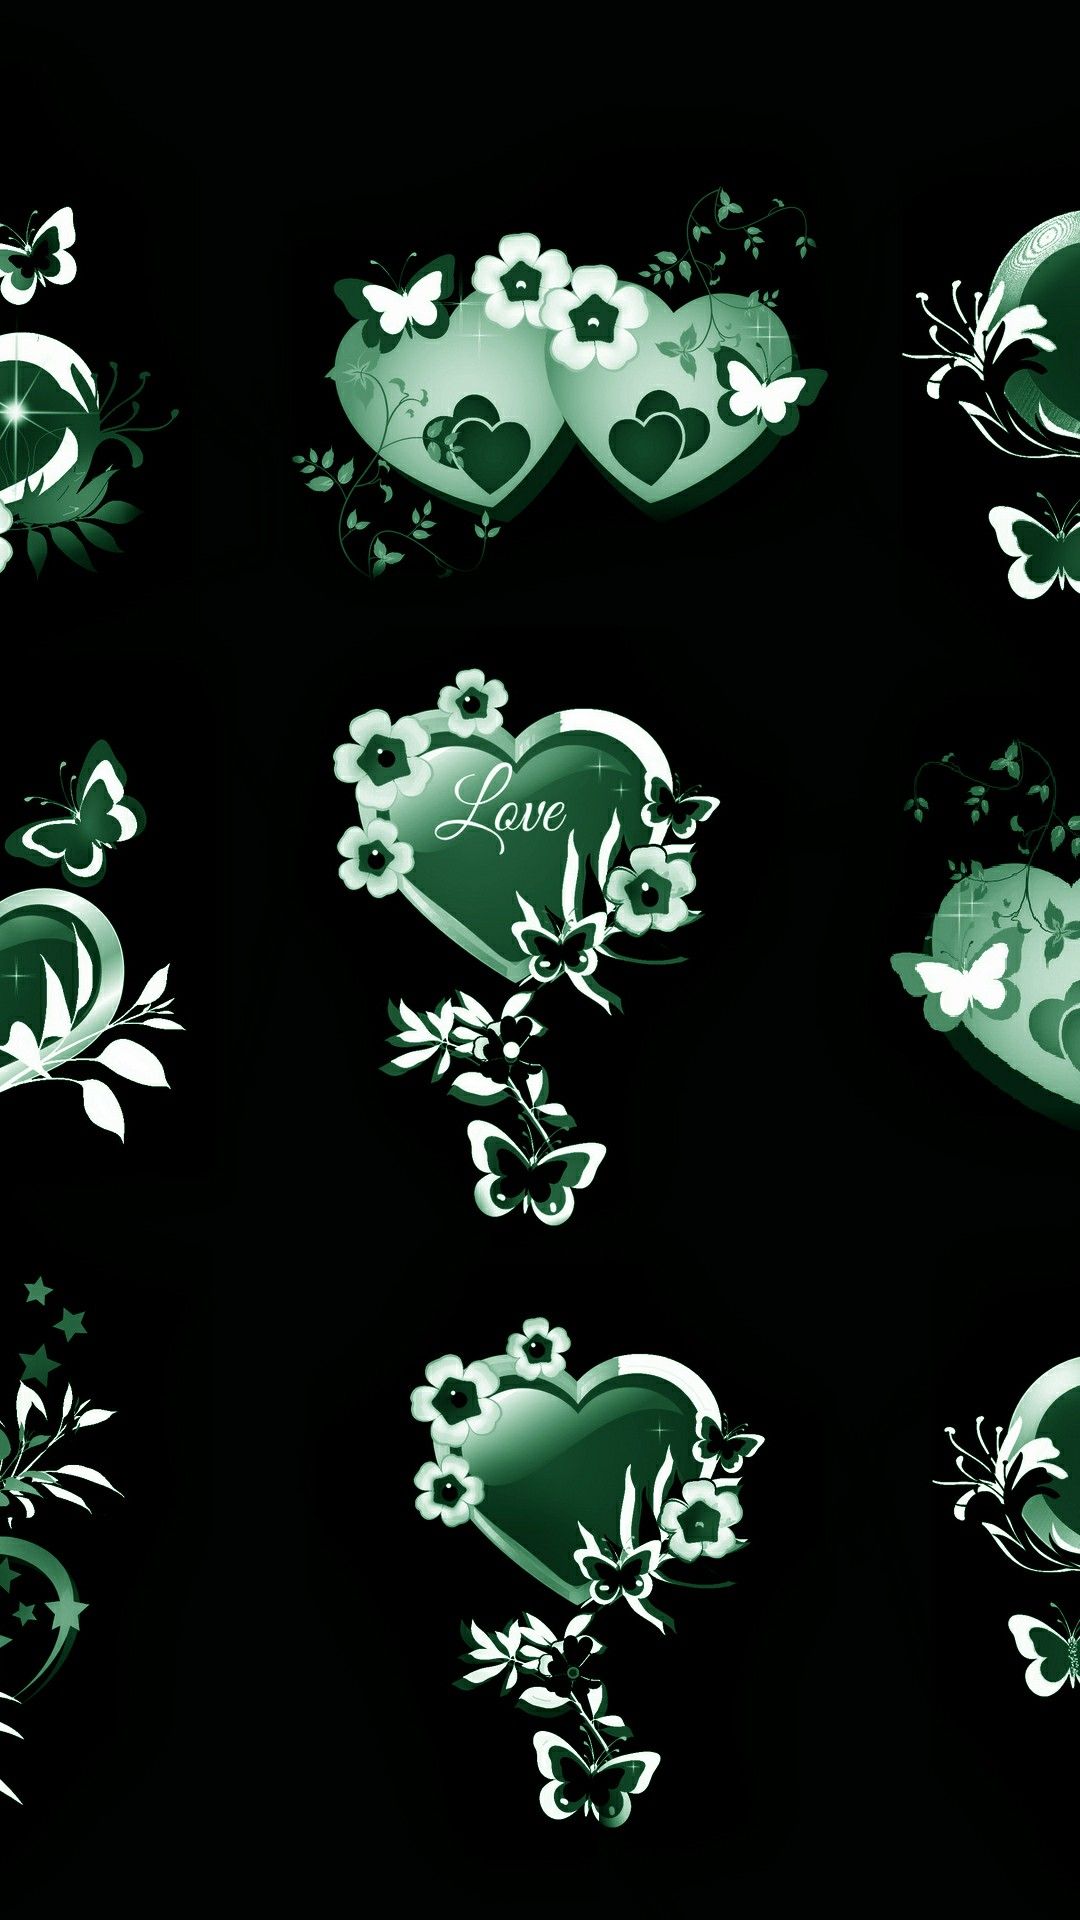 Green hearts in love. Heart wallpaper, Love wallpaper, Wallpaper